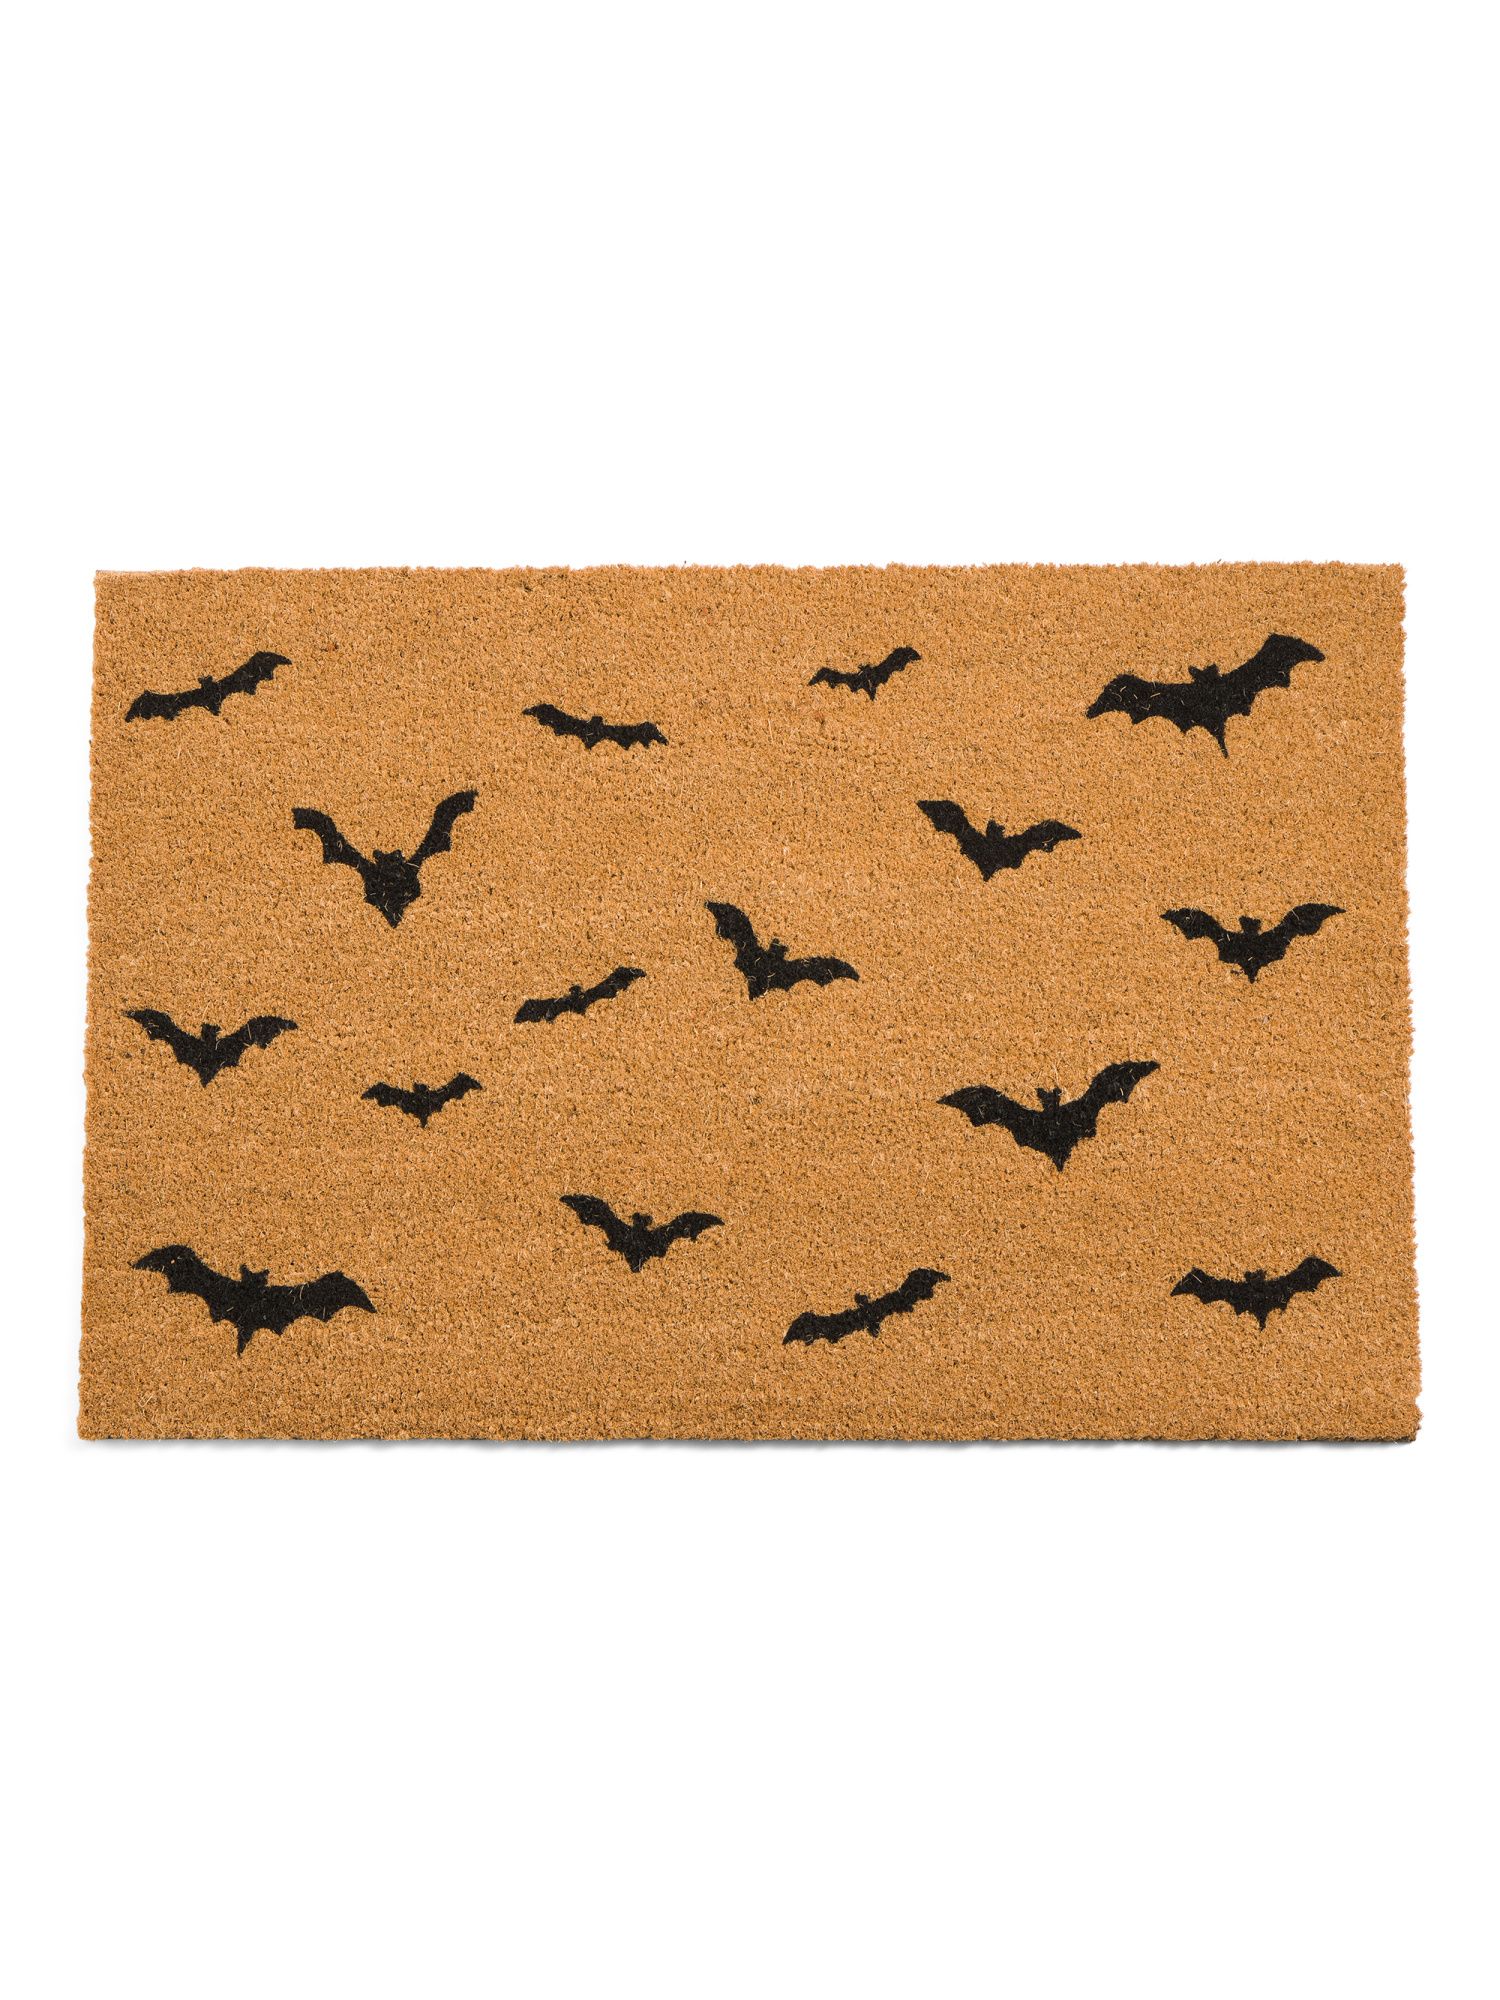 24x36 Bats Doormat | Marshalls